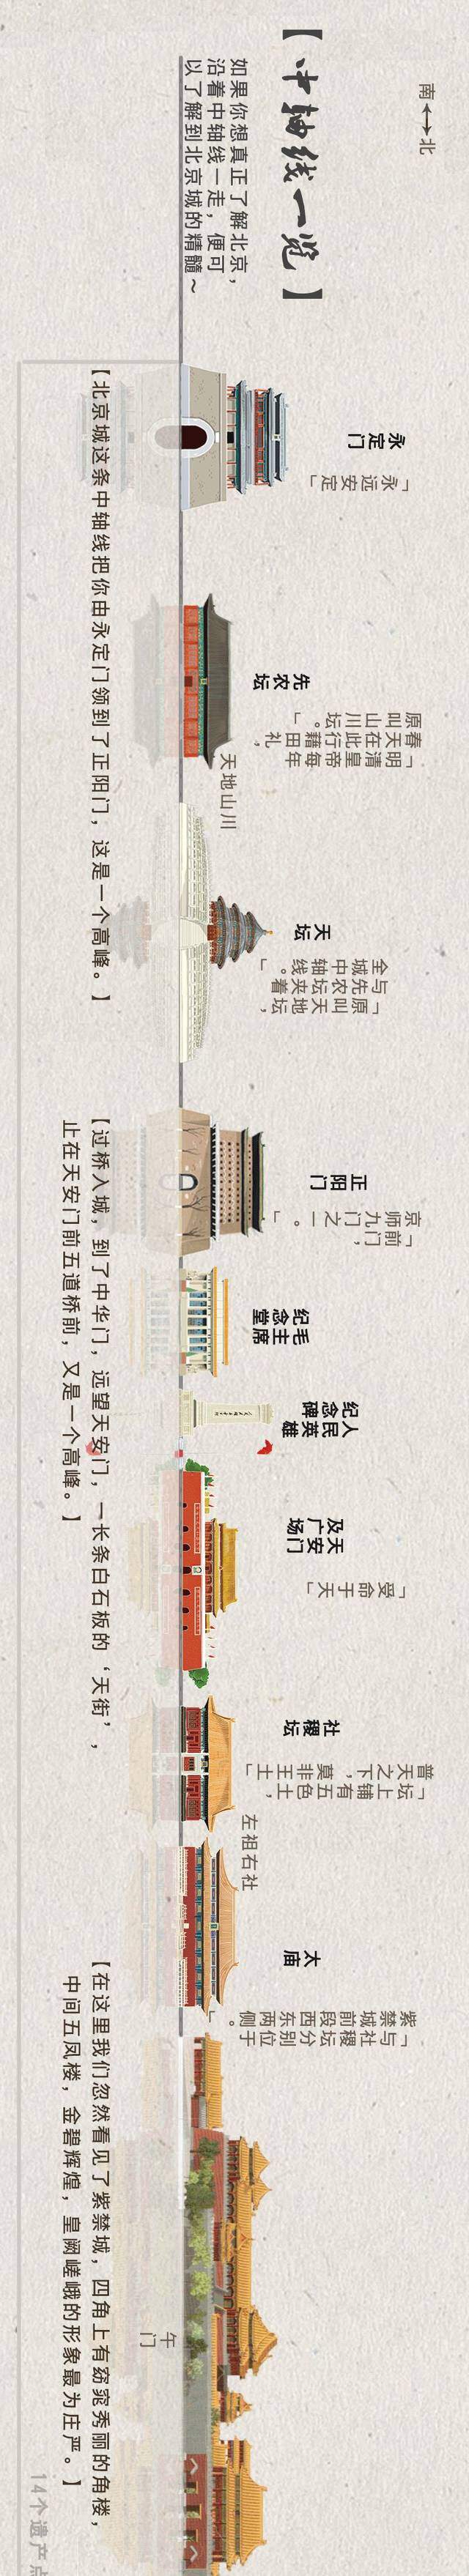 2018年7月,北京中轴线申遗已确定天安门等14处遗产点.